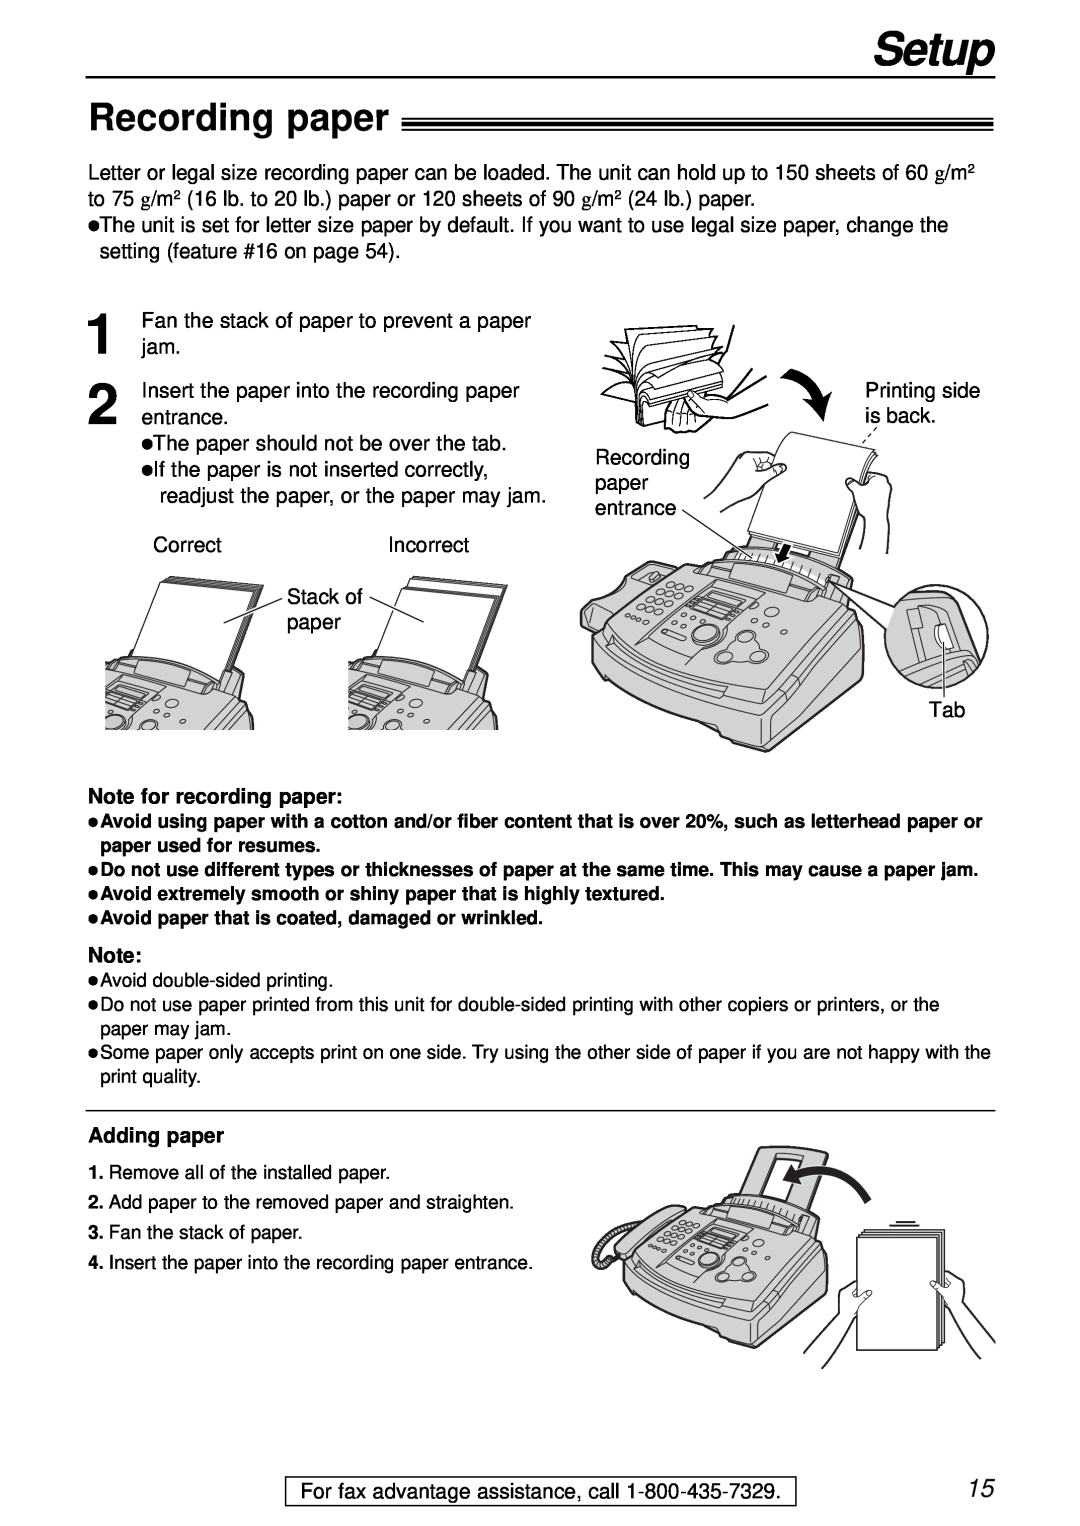 Panasonic KX-FL501 manual Recording paper, Setup, Note for recording paper, Adding paper 